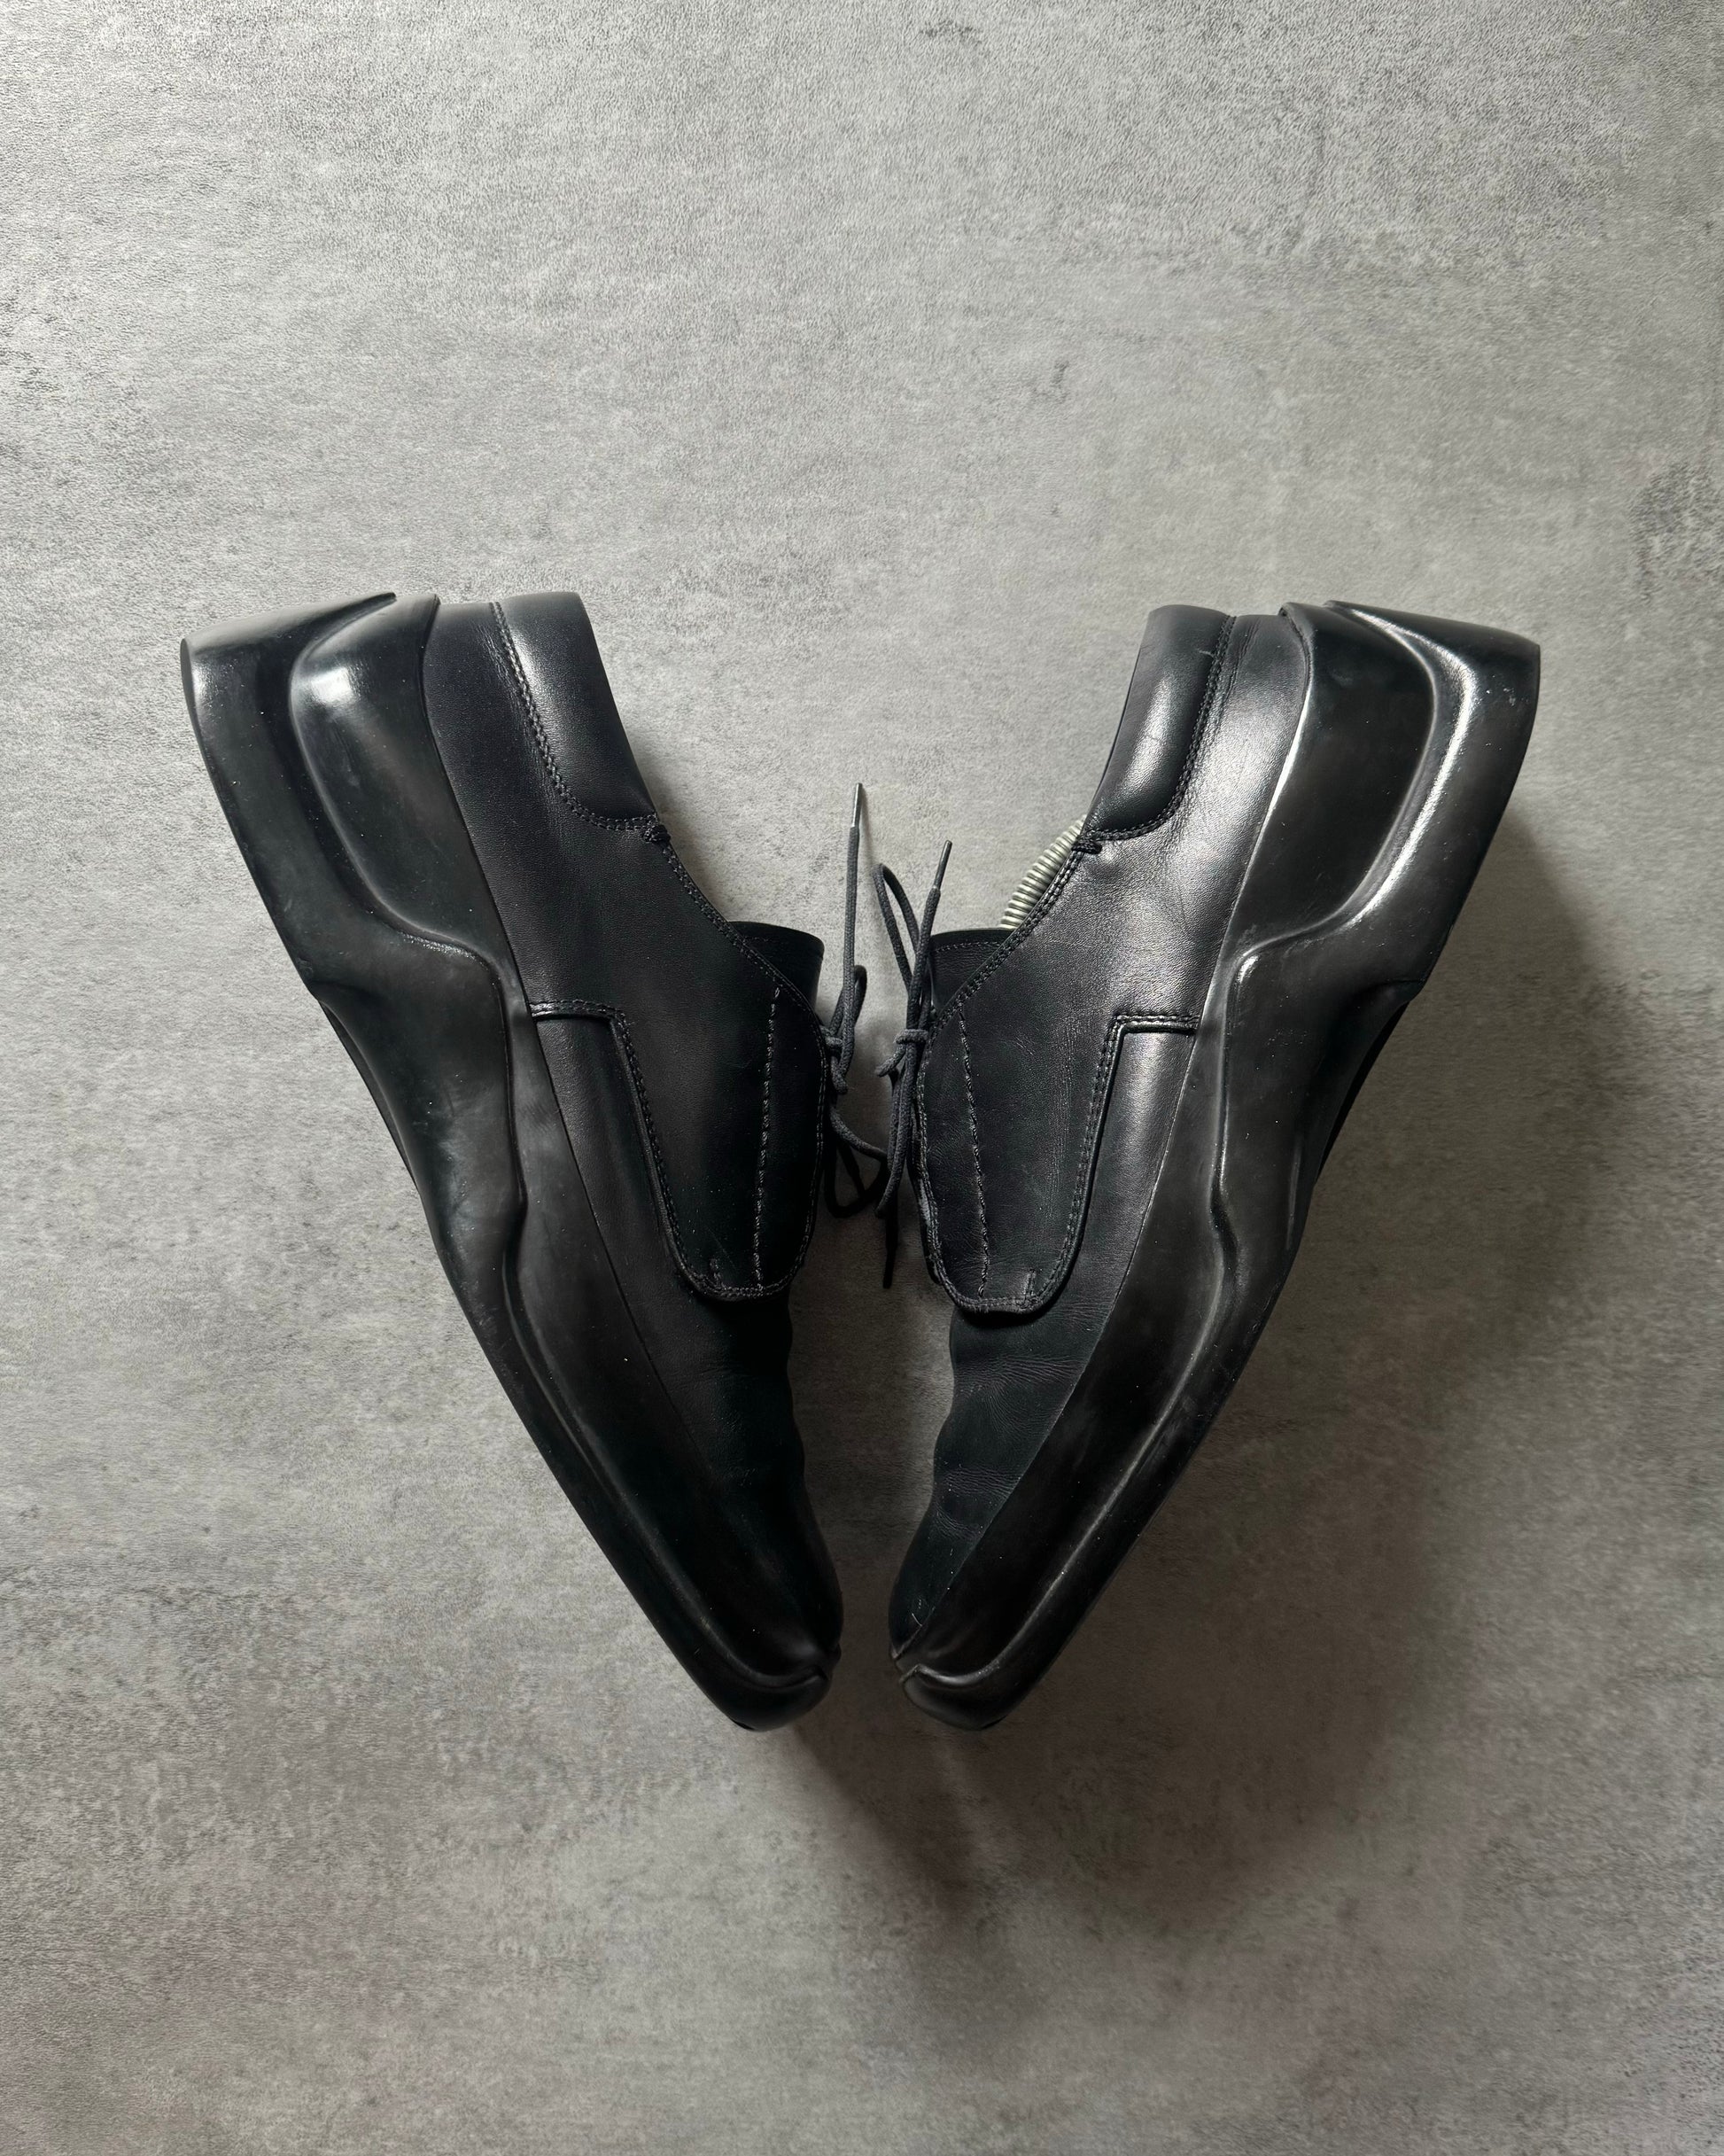 FW1999 Prada Black Low Premium Leather Boots (43) - 2